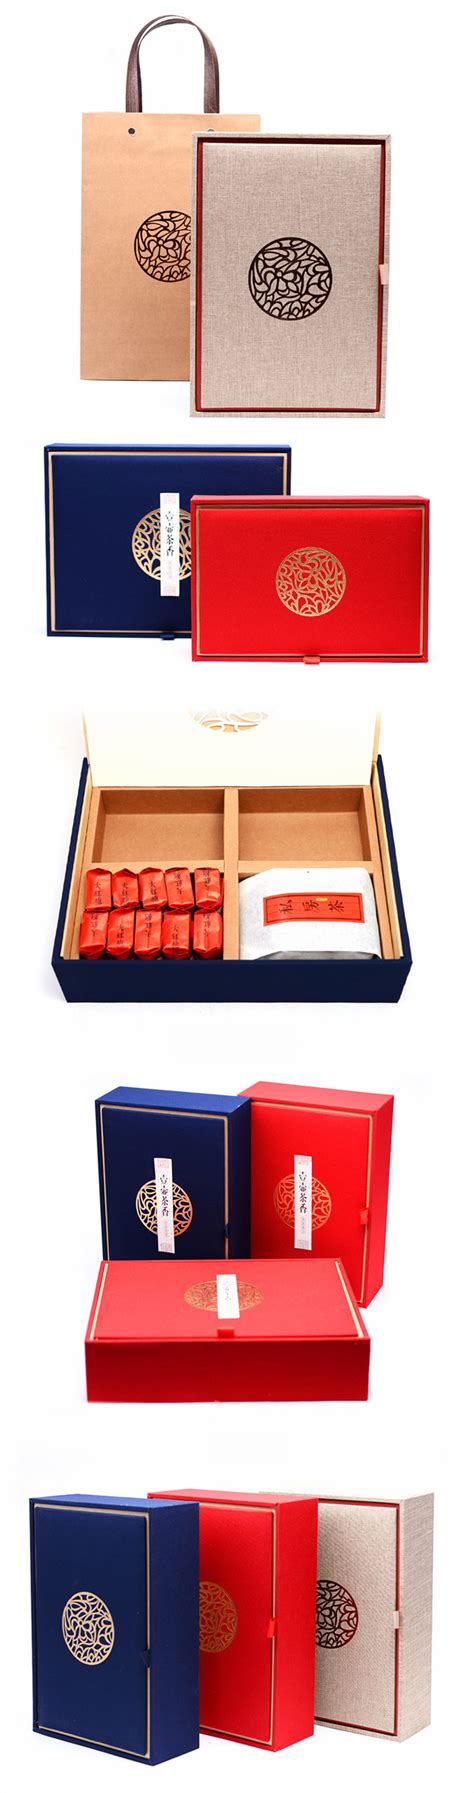 礼盒定制,高档包装礼盒定制-专业企业创意礼盒定制网 - 千纸盒 - 千纸盒